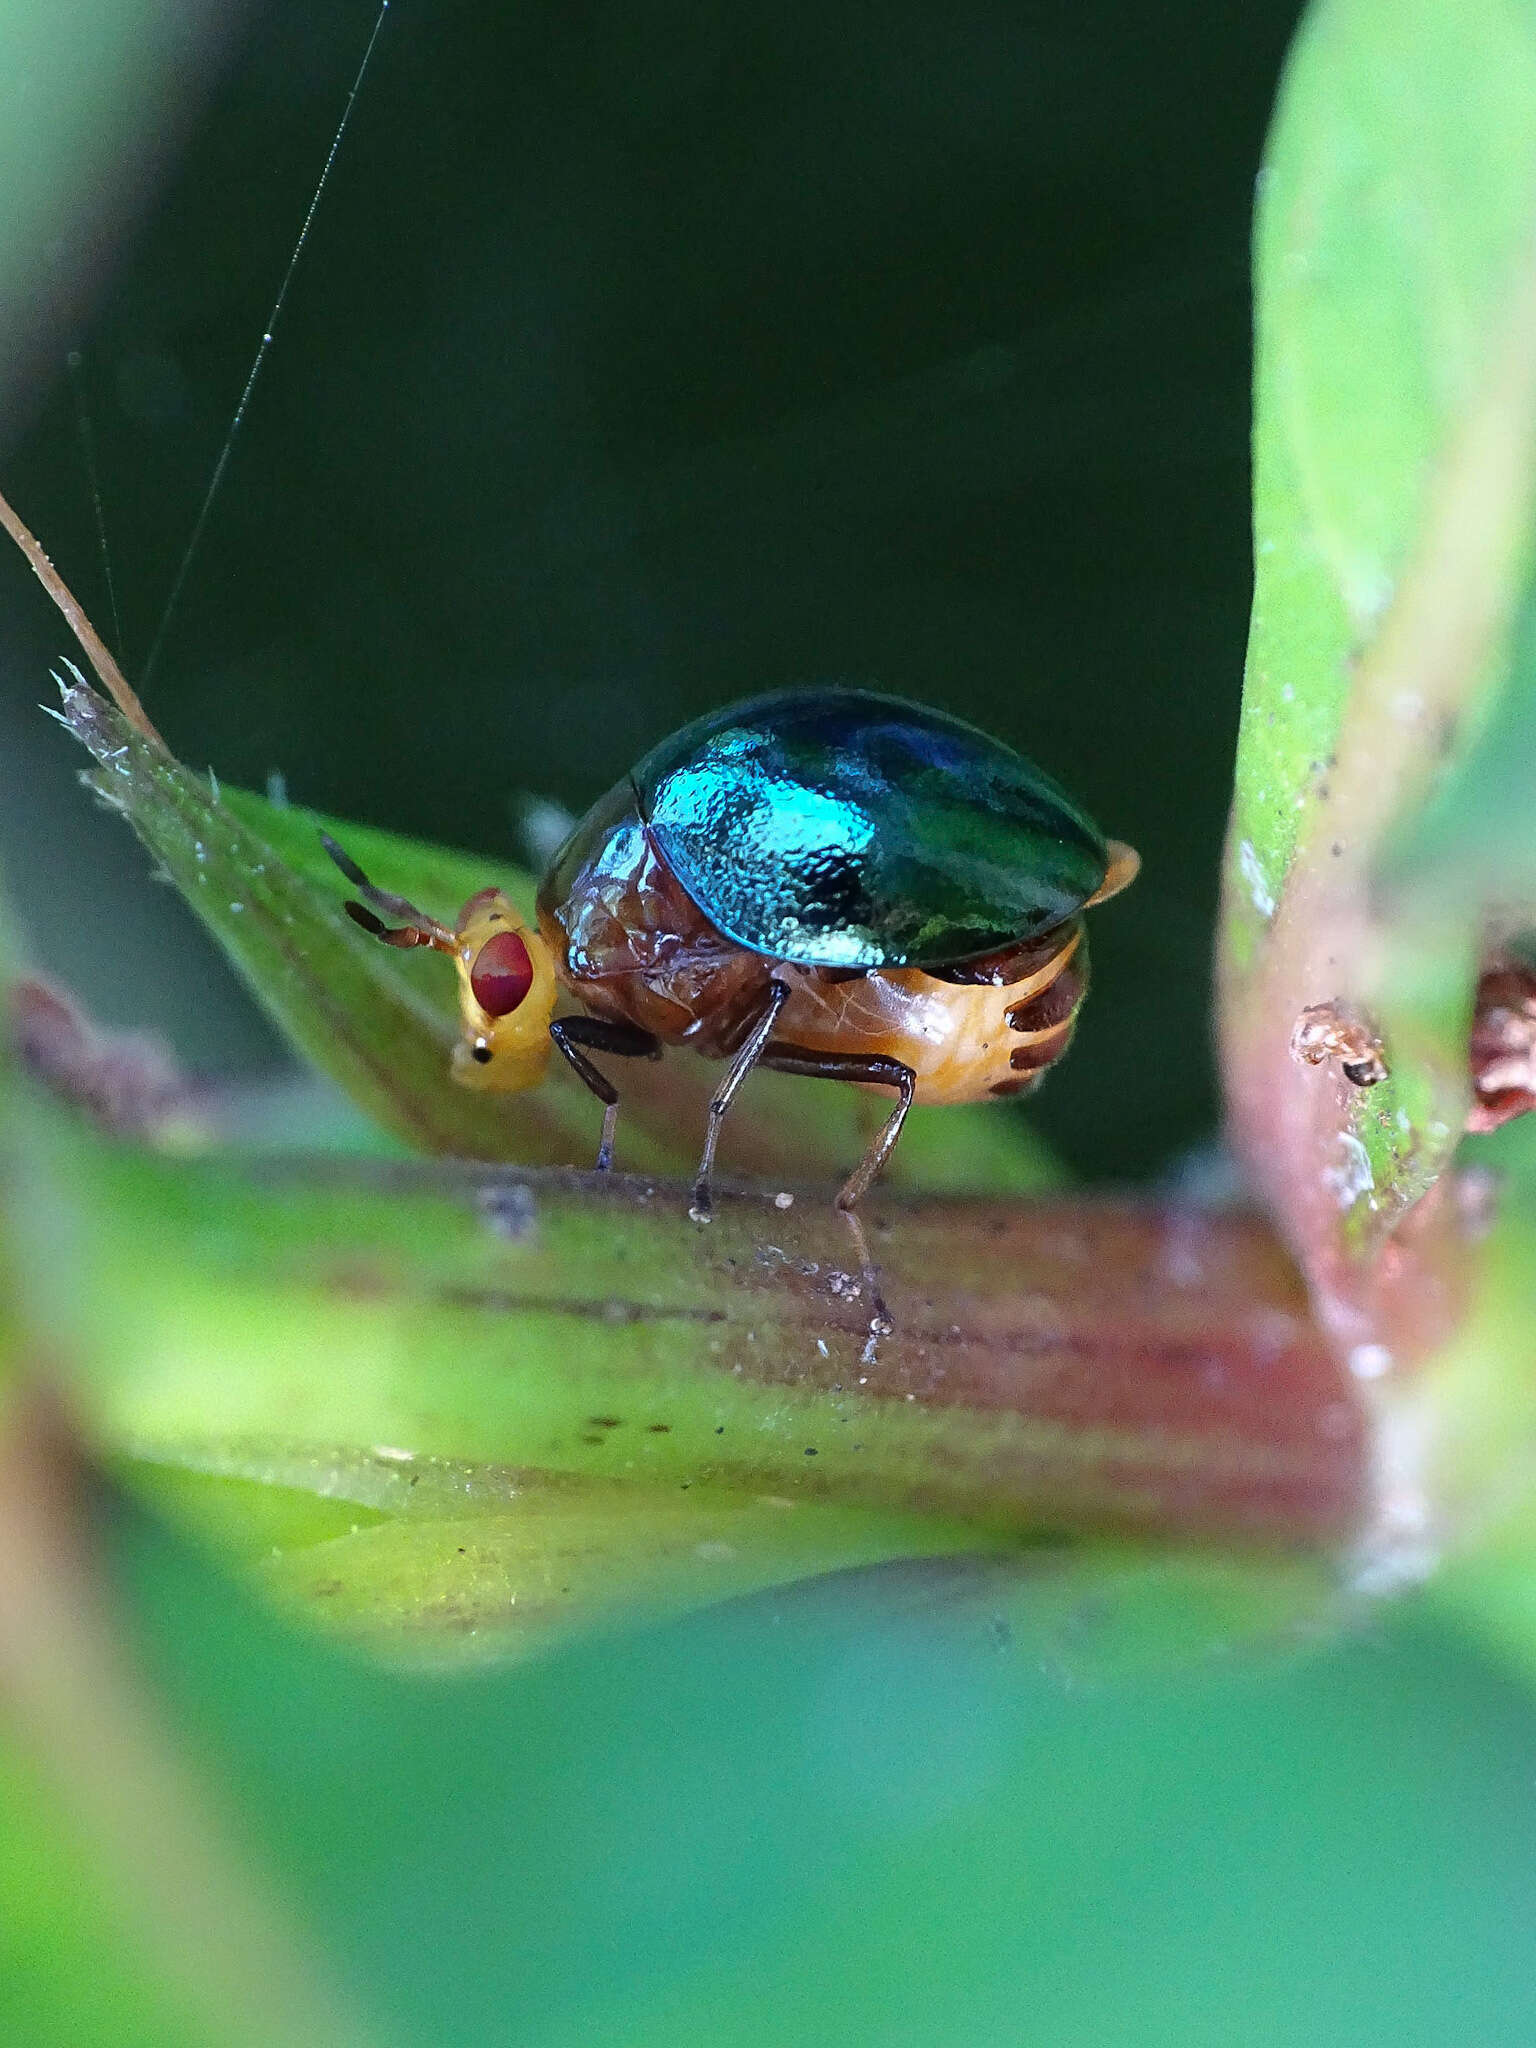 Image of beetle flies